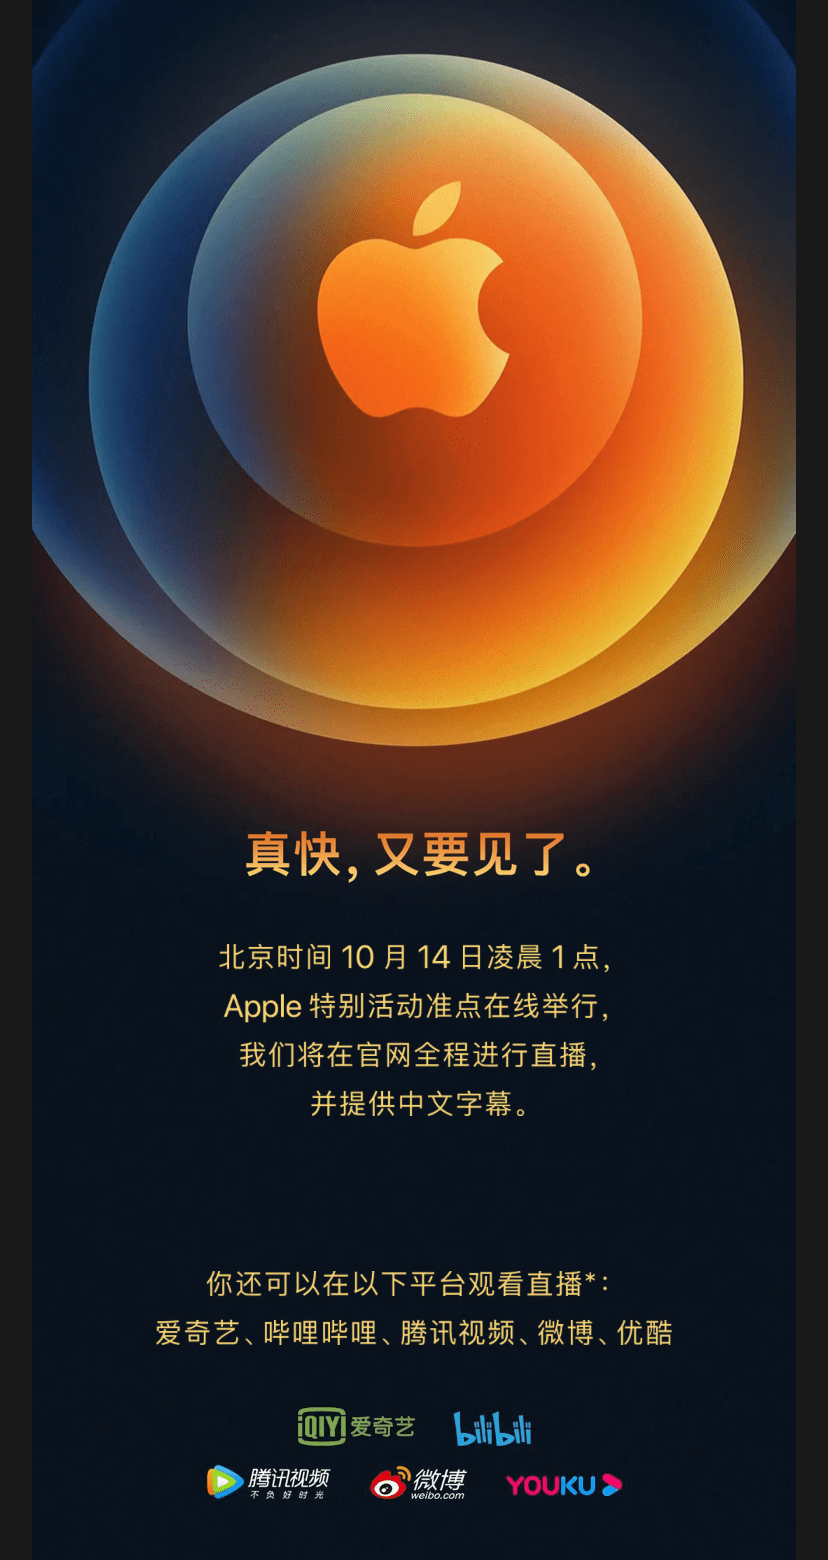 苹果宣布10月14日举行秋季新品发布会,iphone 12系列来了?